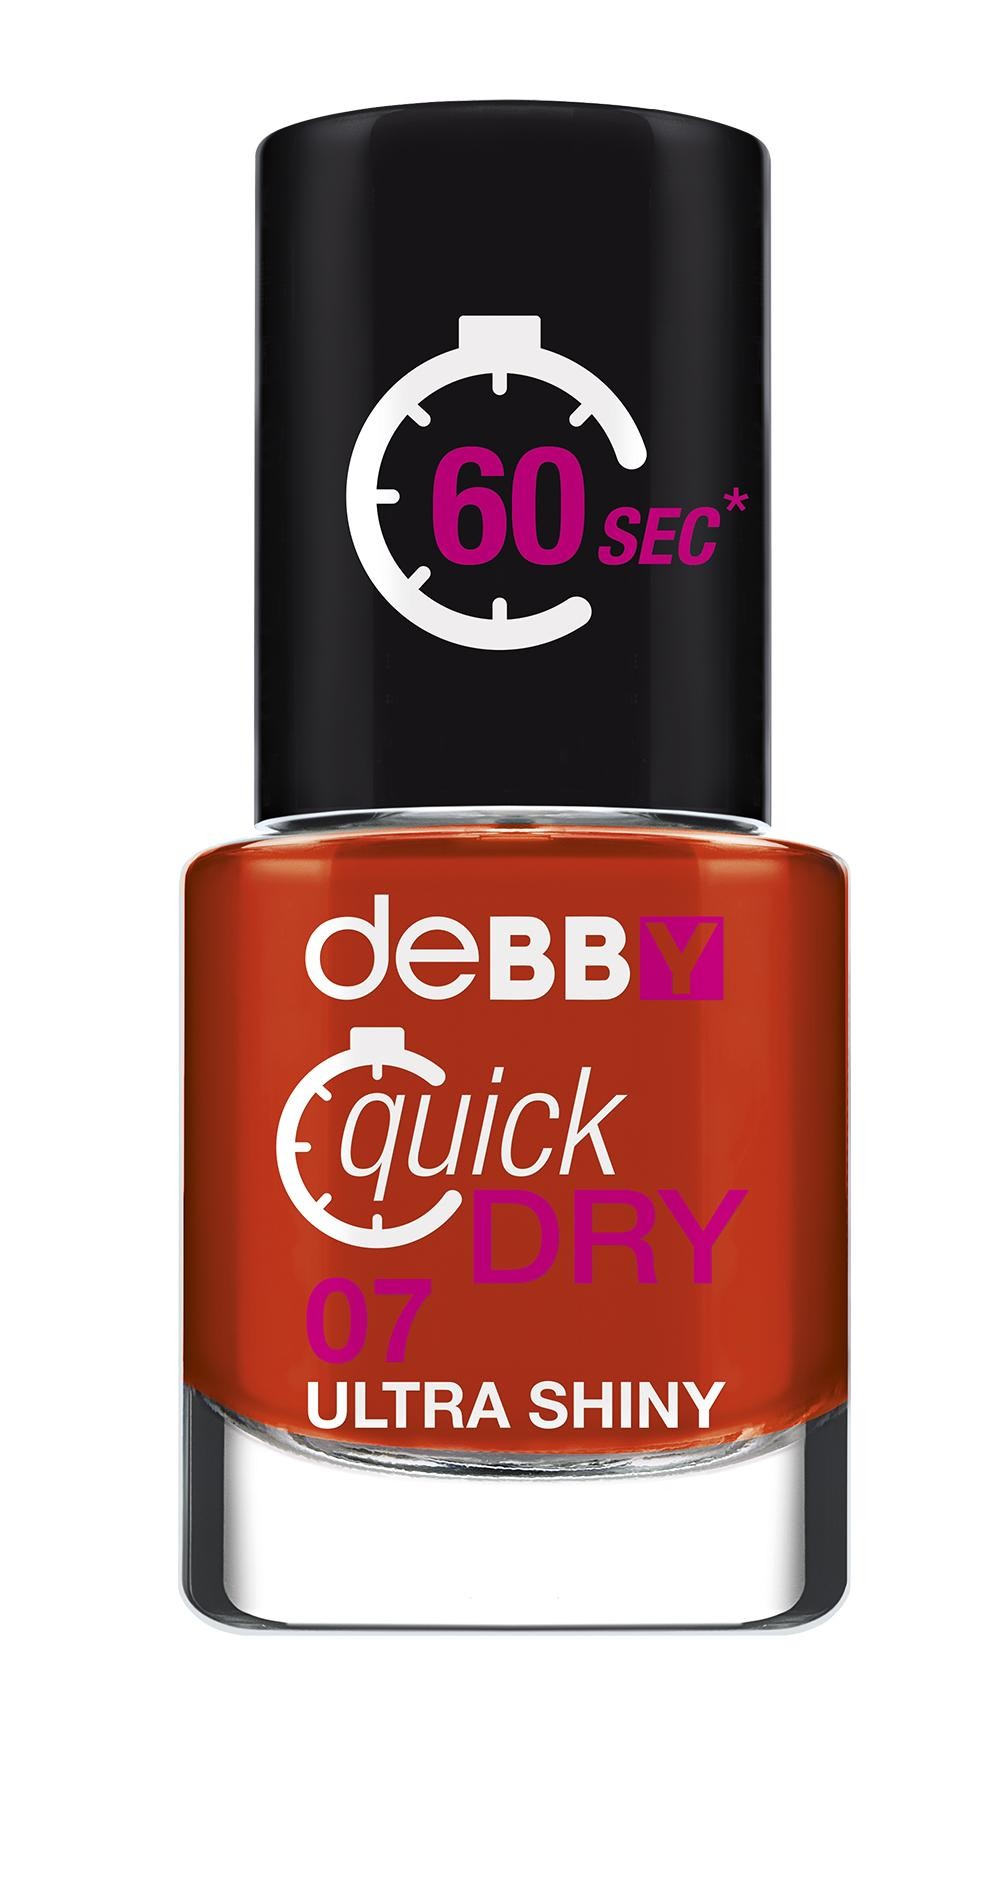 deBBY quickDRY 07 7.5ml